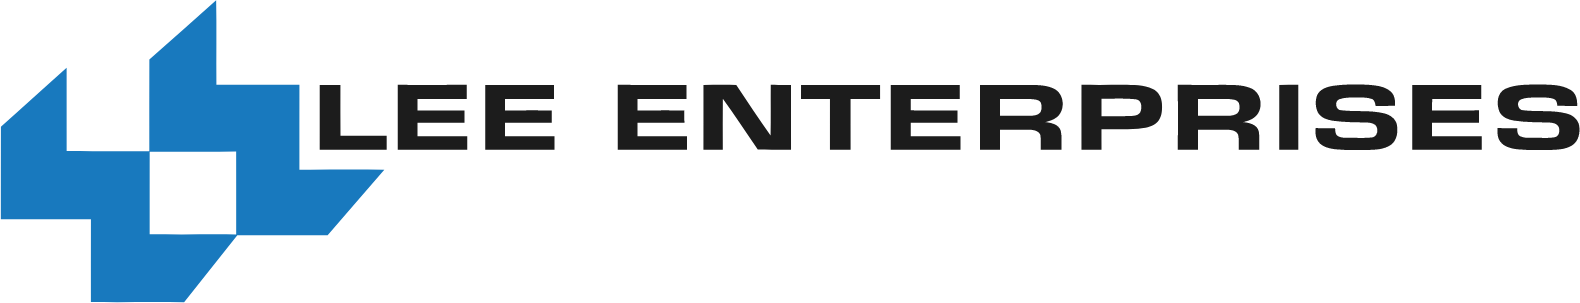 Lee Enterprises
 logo large (transparent PNG)